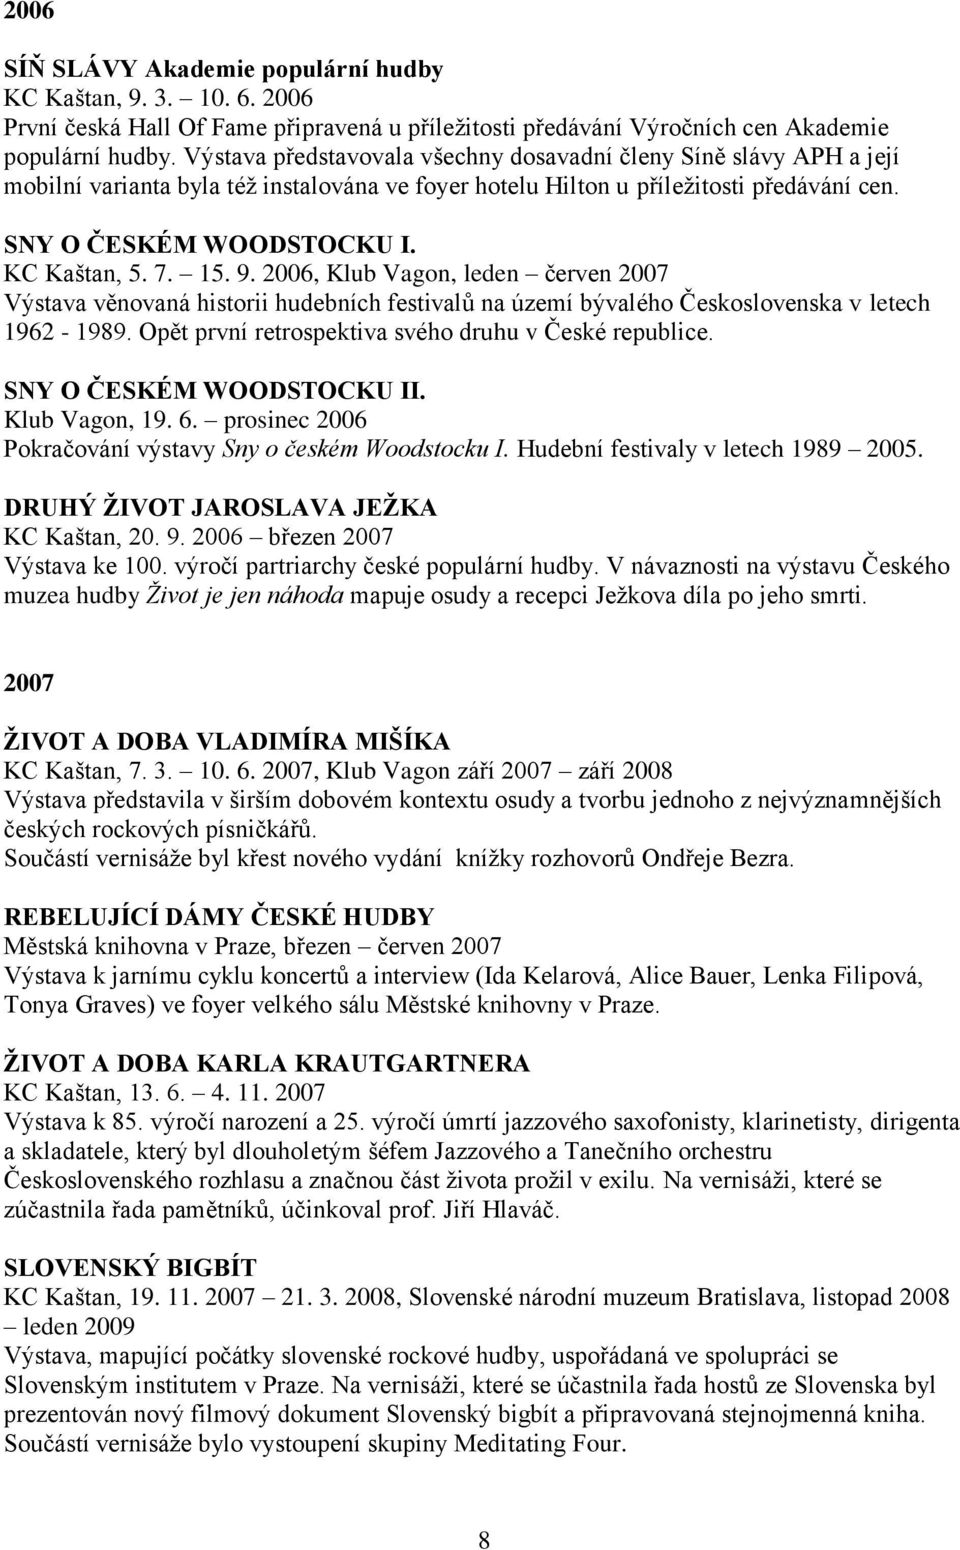 7. 15. 9. 2006, Klub Vagon, leden červen 2007 Výstava věnovaná historii hudebních festivalů na území bývalého Československa v letech 1962-1989. Opět první retrospektiva svého druhu v České republice.